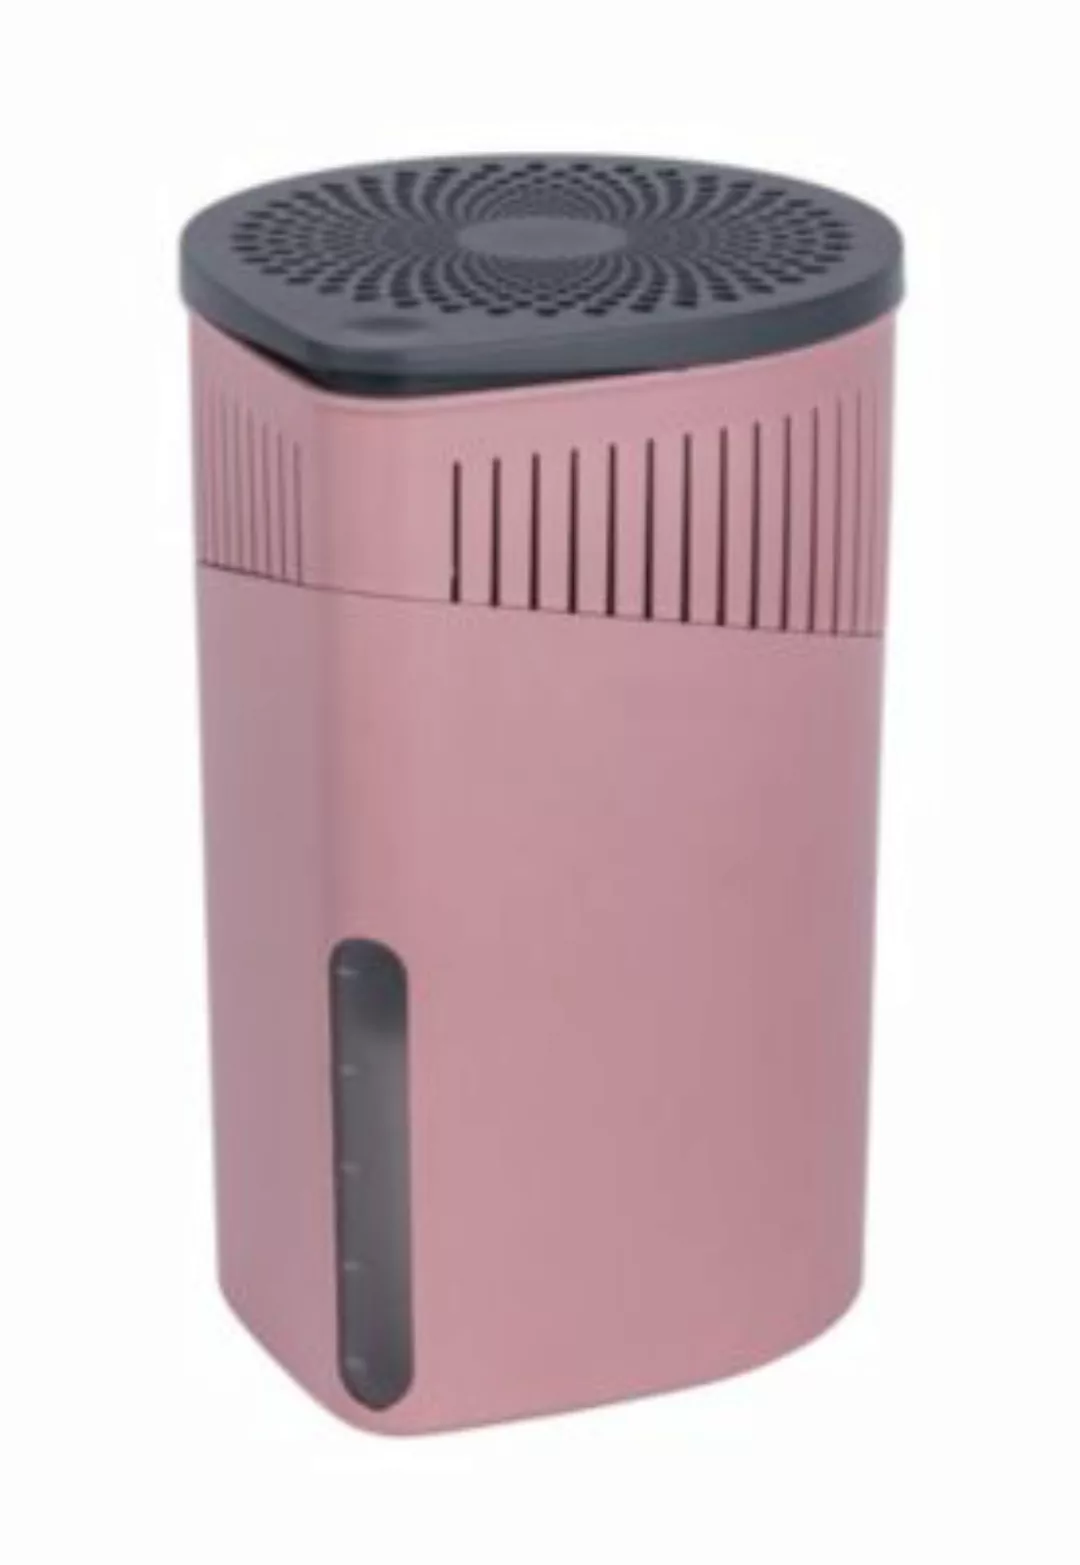 WENKO Raumentfeuchter Drop Rosa 1000 g, Luftentfeuchter rosa-kombi günstig online kaufen